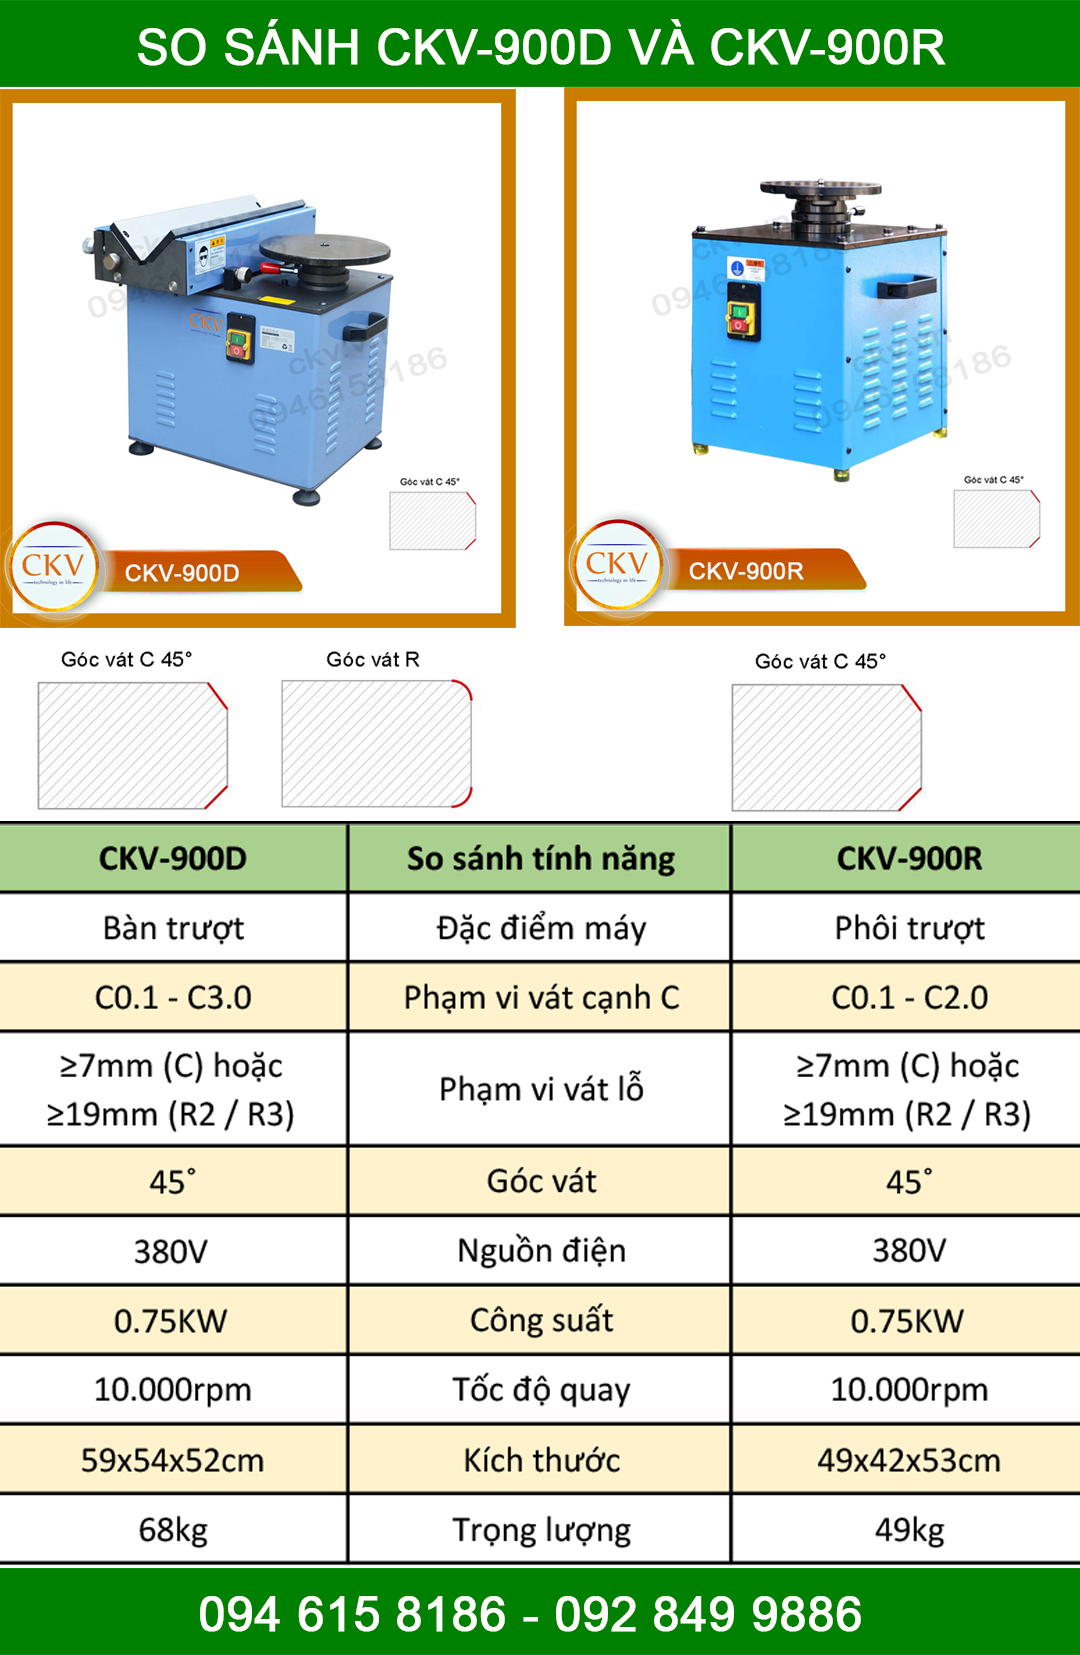 So sánh CKV-900D và CKV-900R